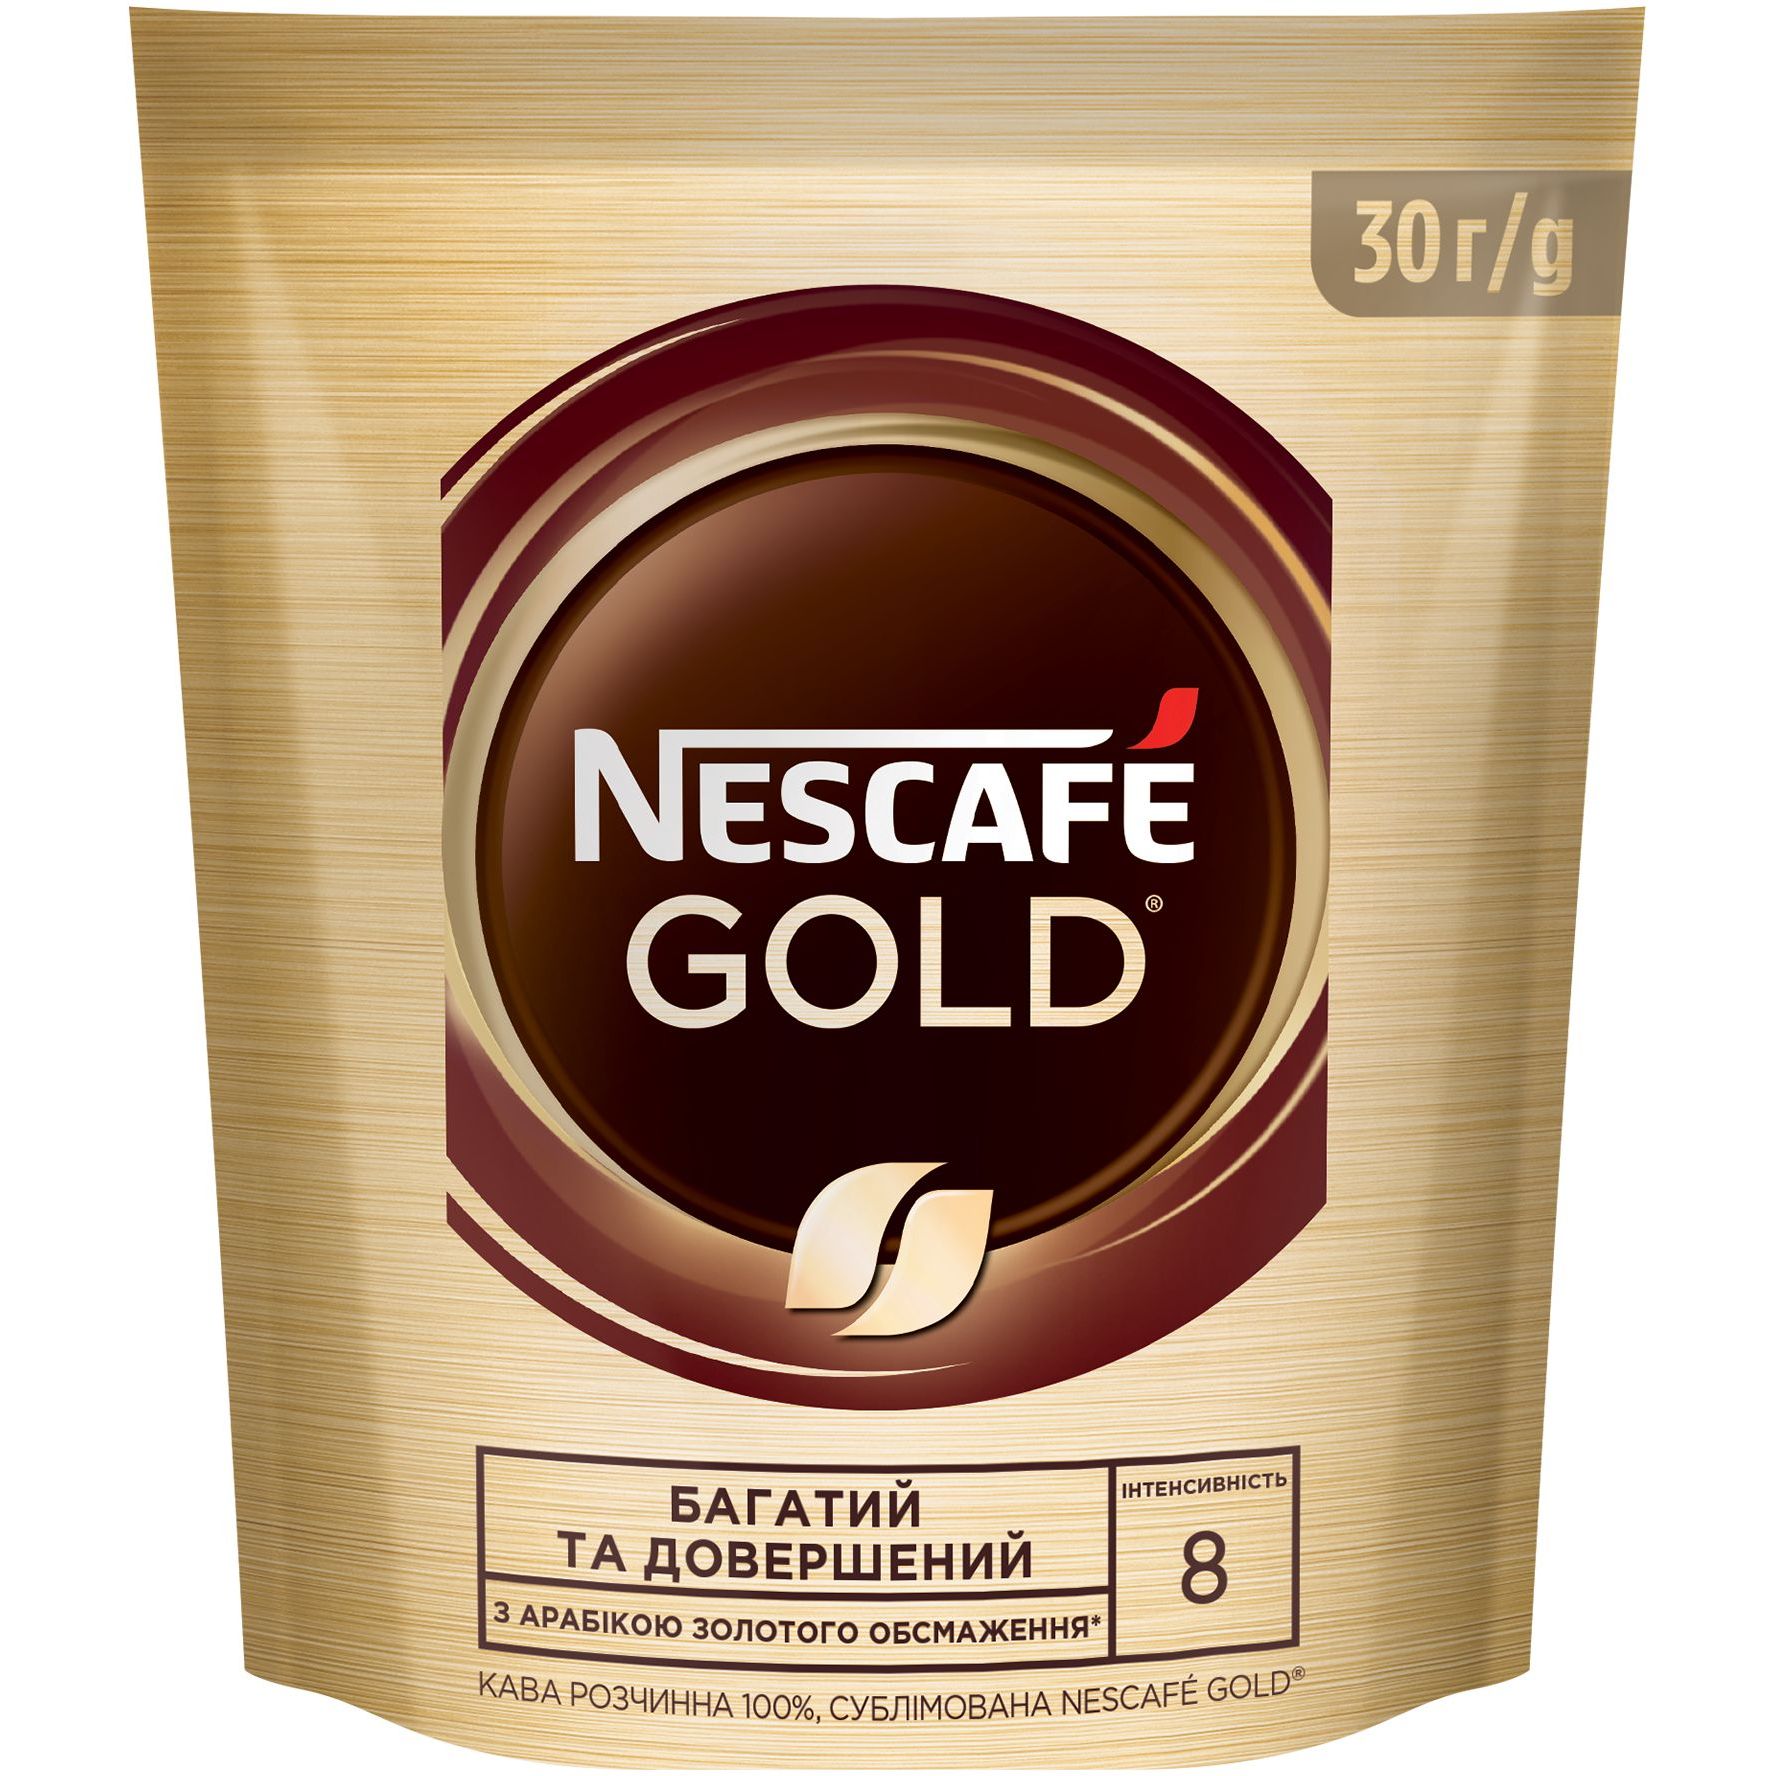 Кофе растворимый Nescafe Gold 30 г - фото 1